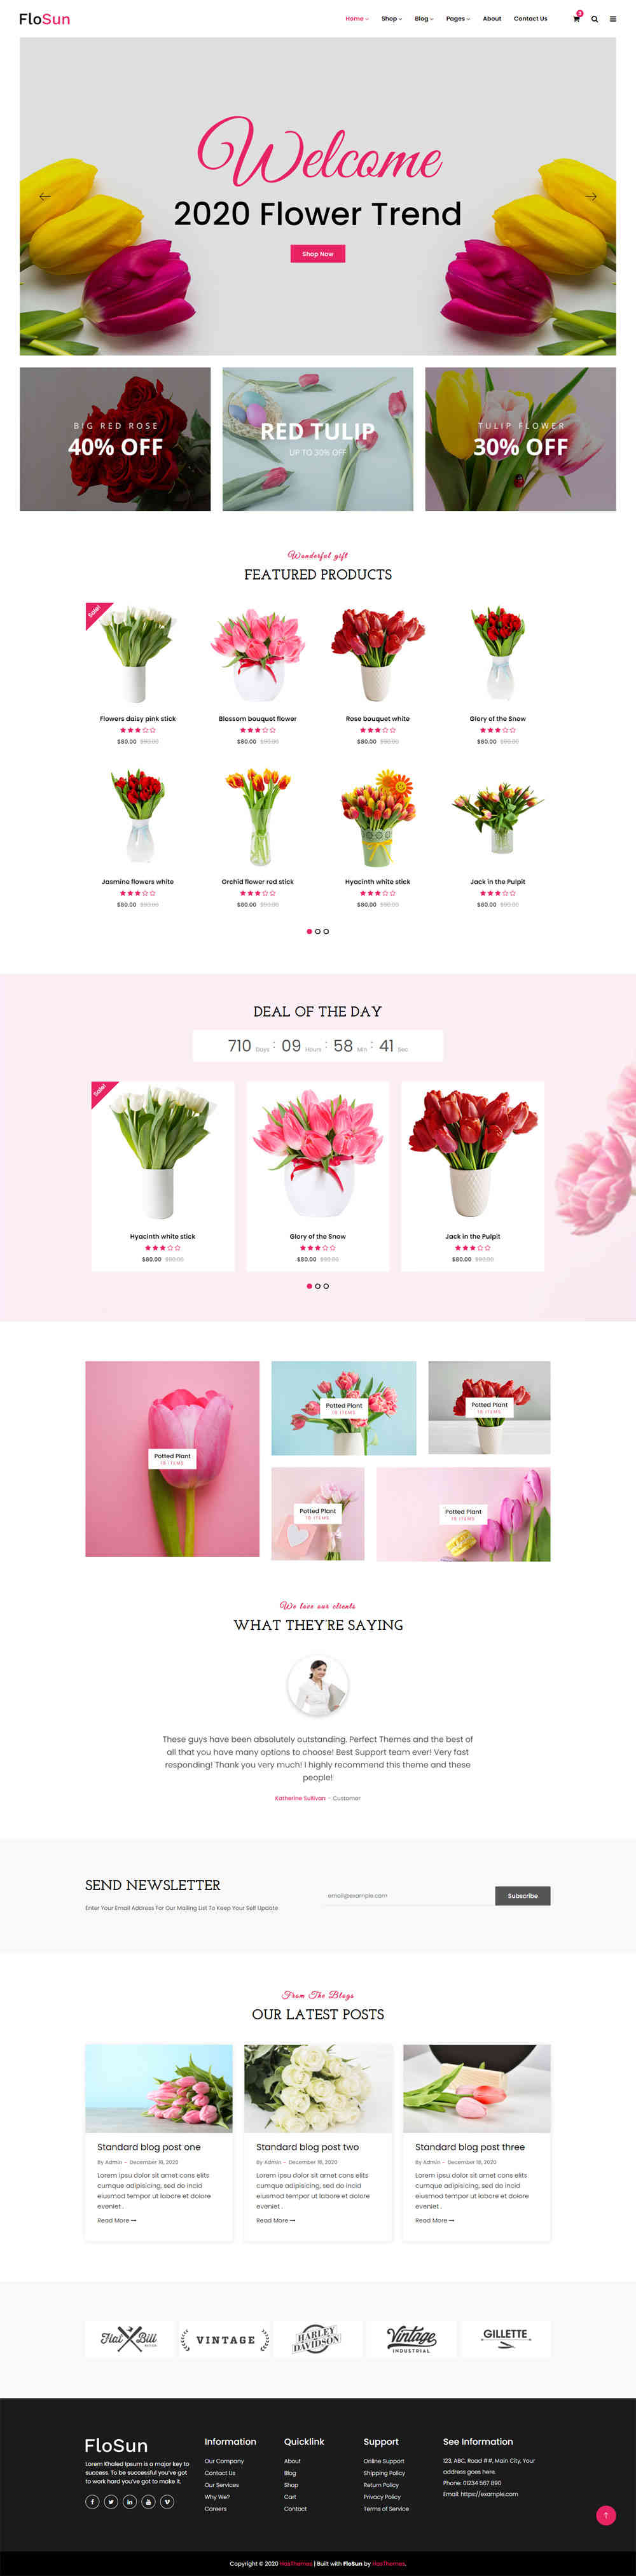 thiet ke website tmi flowershop 10021